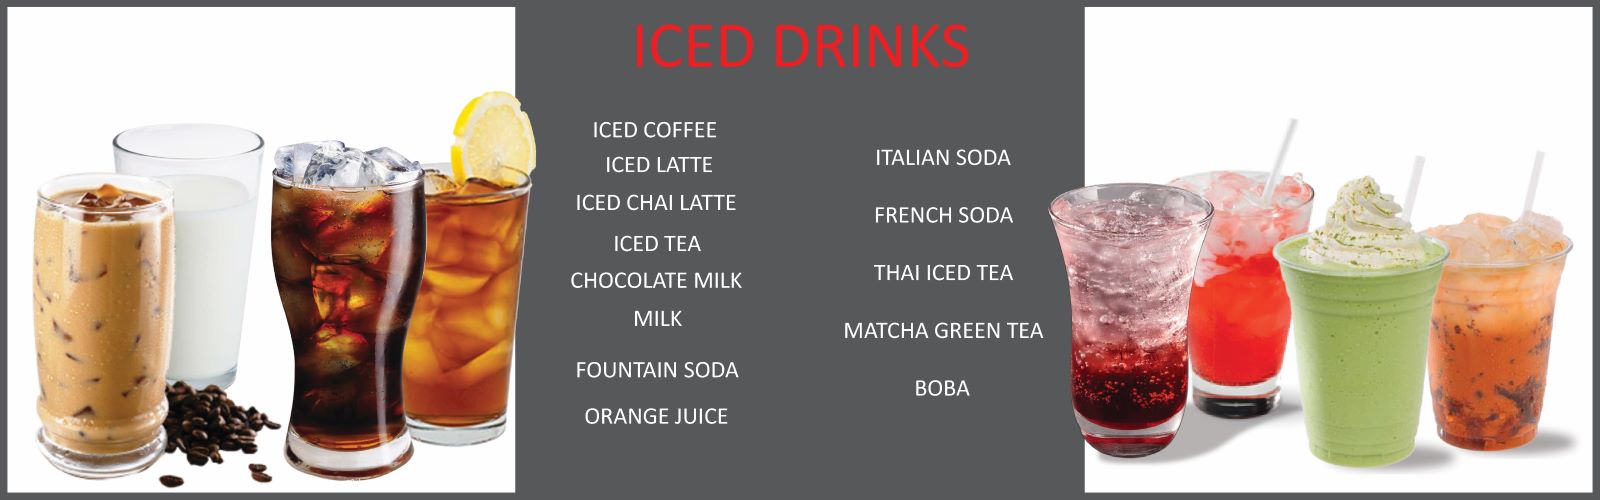 Welcome to Brahma Café - Iced Drinks